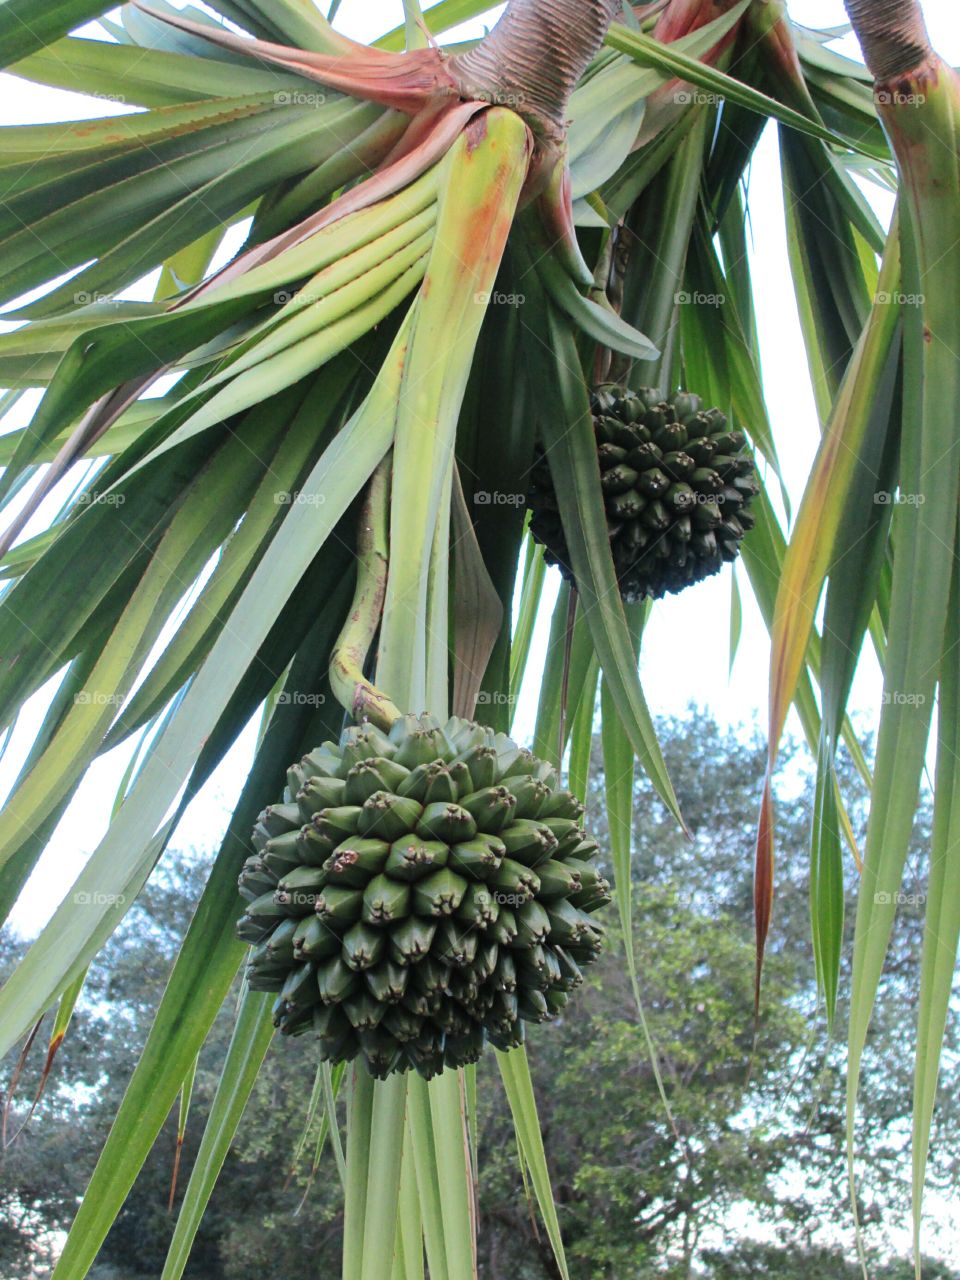 Pandanus fruit. Pandanus or Screw Pine with fruit